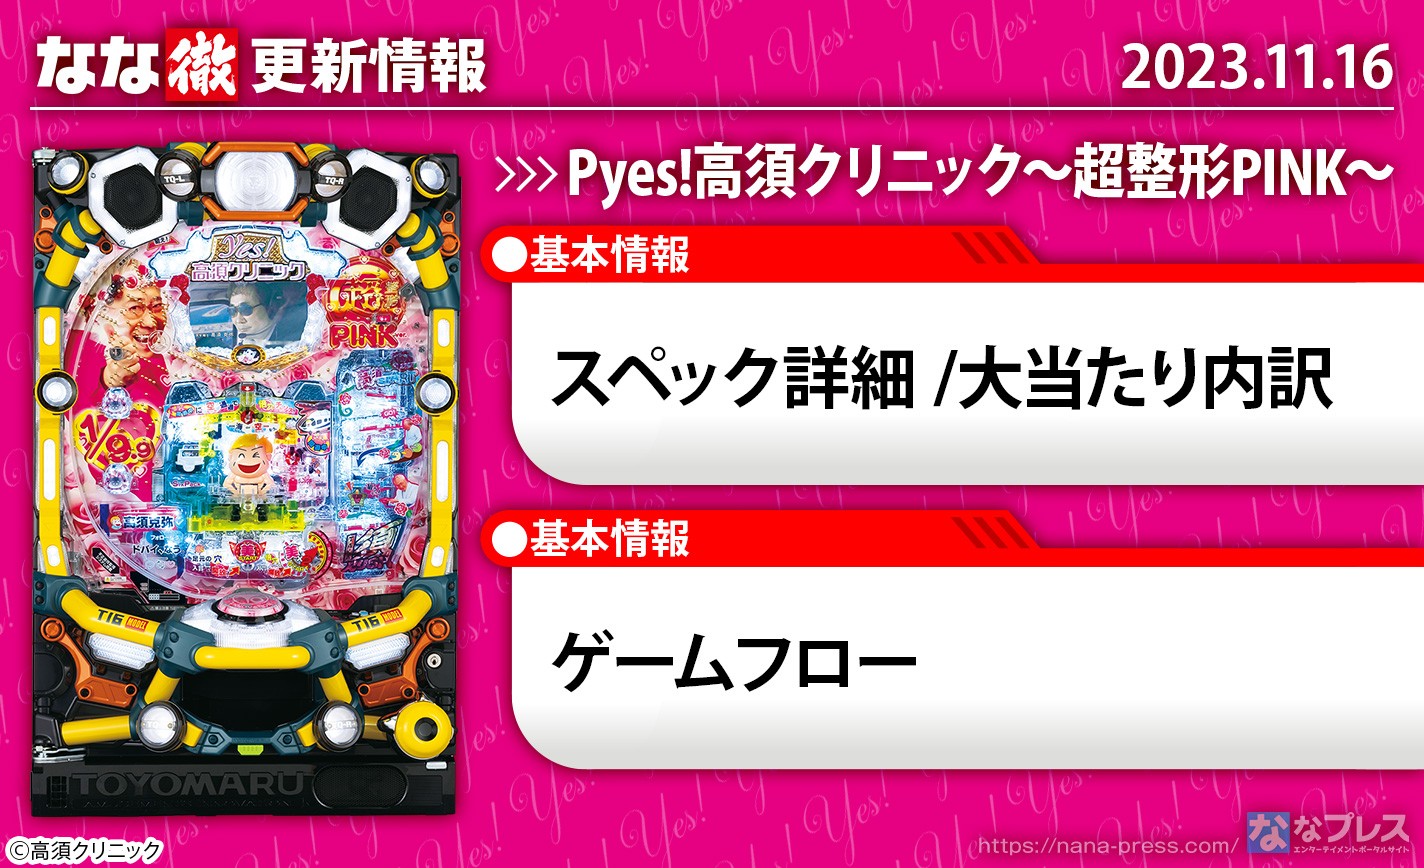 【P yes!高須クリニック〜超整形PINK〜】機種ページを公開しました。【11月16日解析情報更新】 eyecatch-image